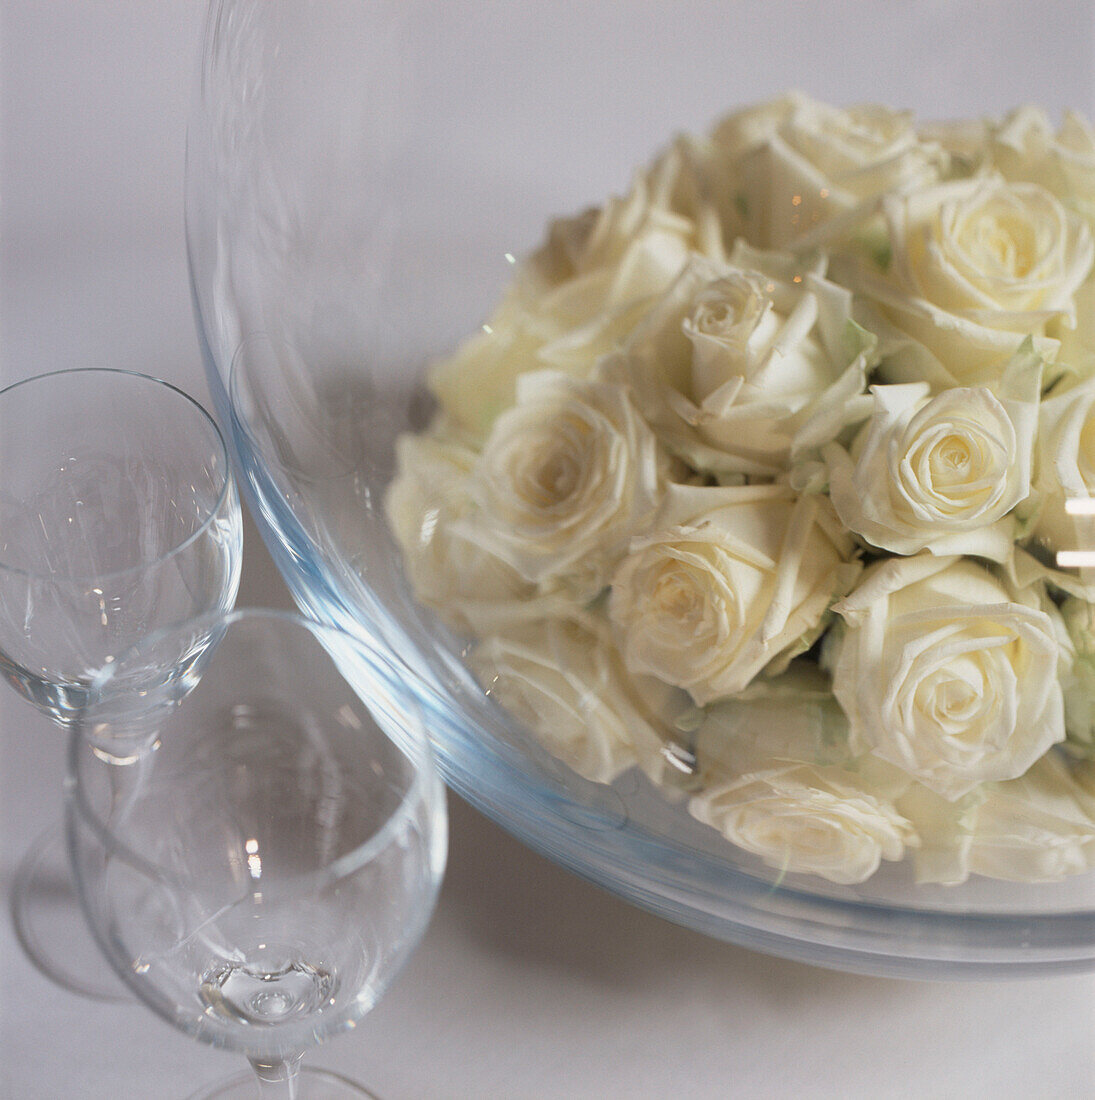 Blumenauslage auf einer weißen Tischplatte